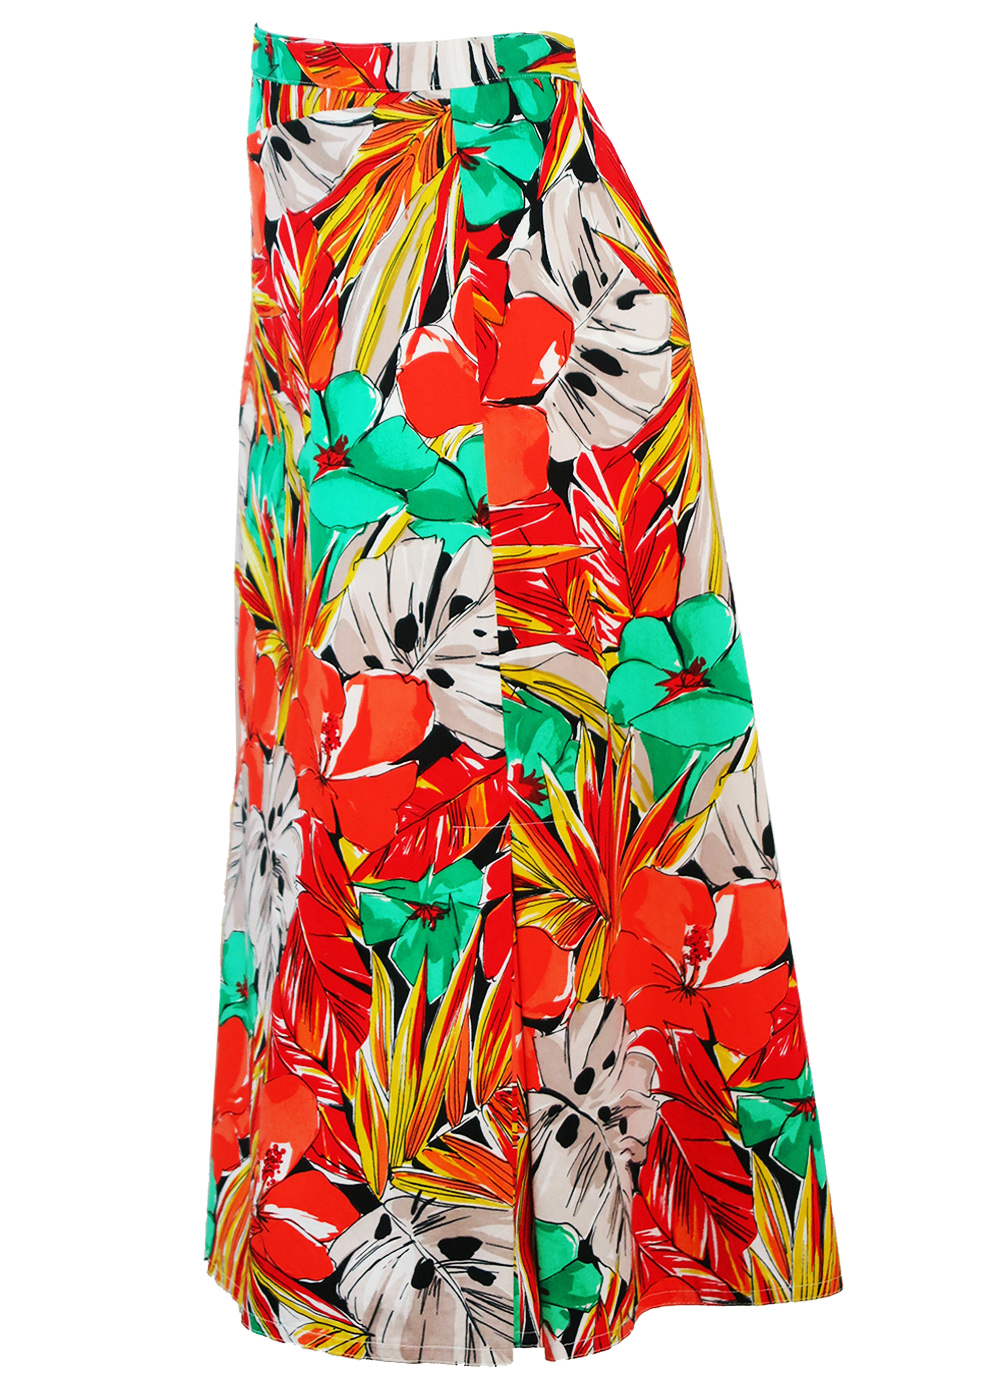 Multicolour Tropical Floral Print Midi Length A-Line Skirt - M/L ...